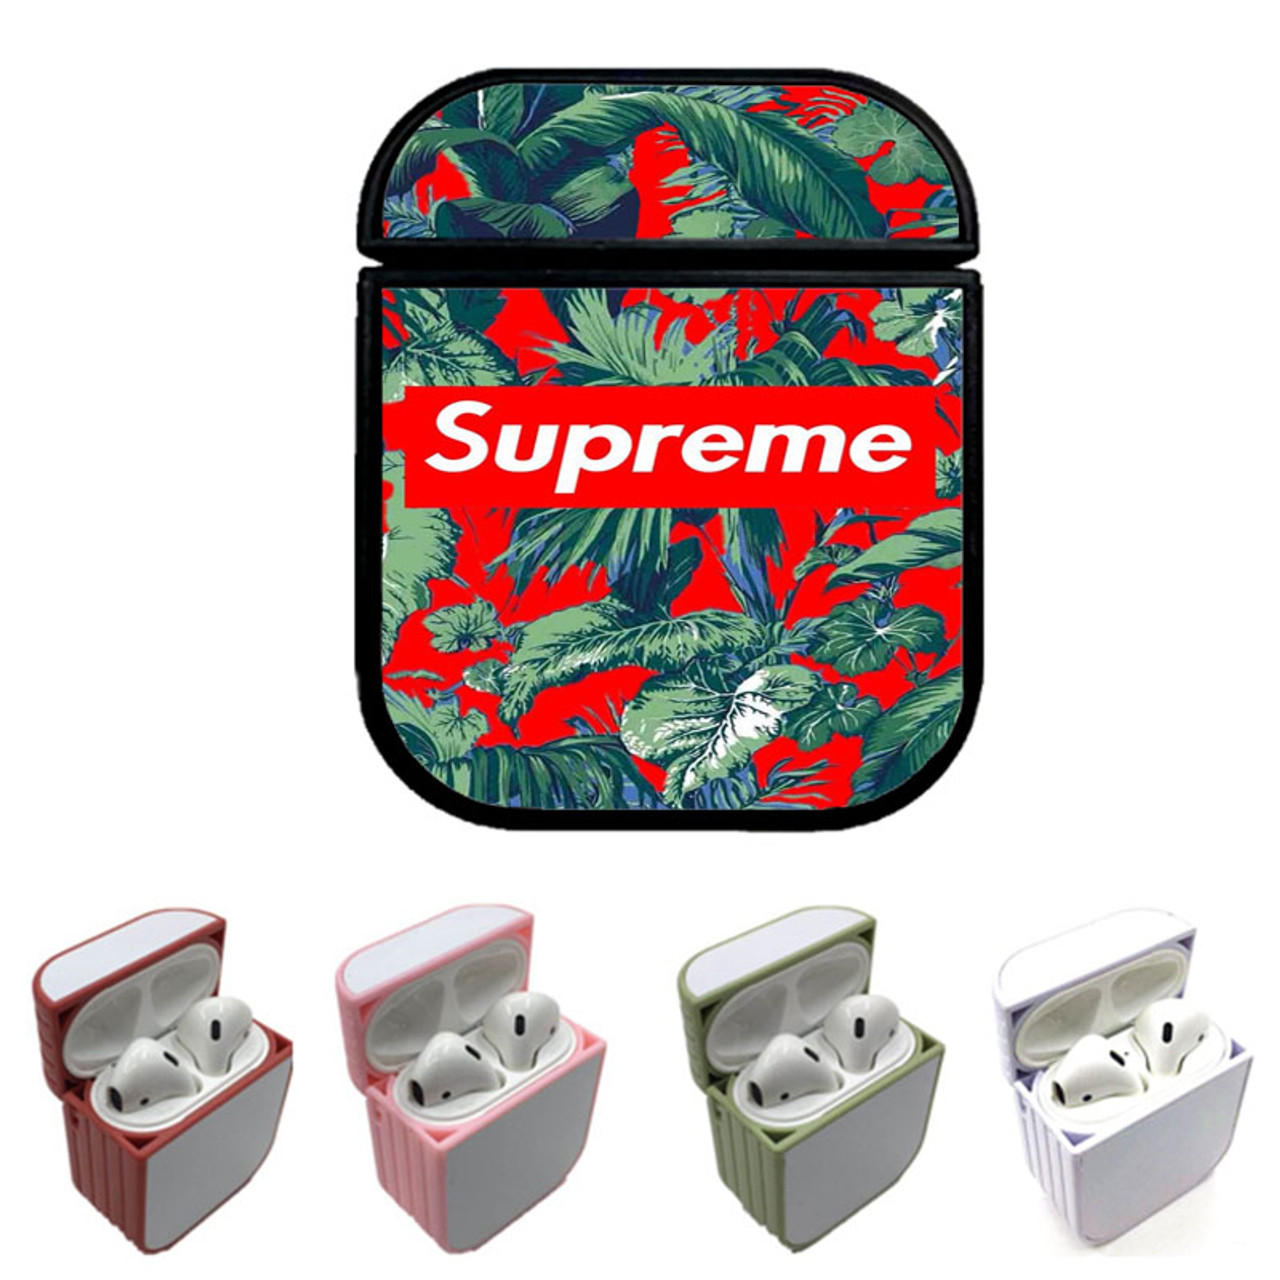 supreme airpods case